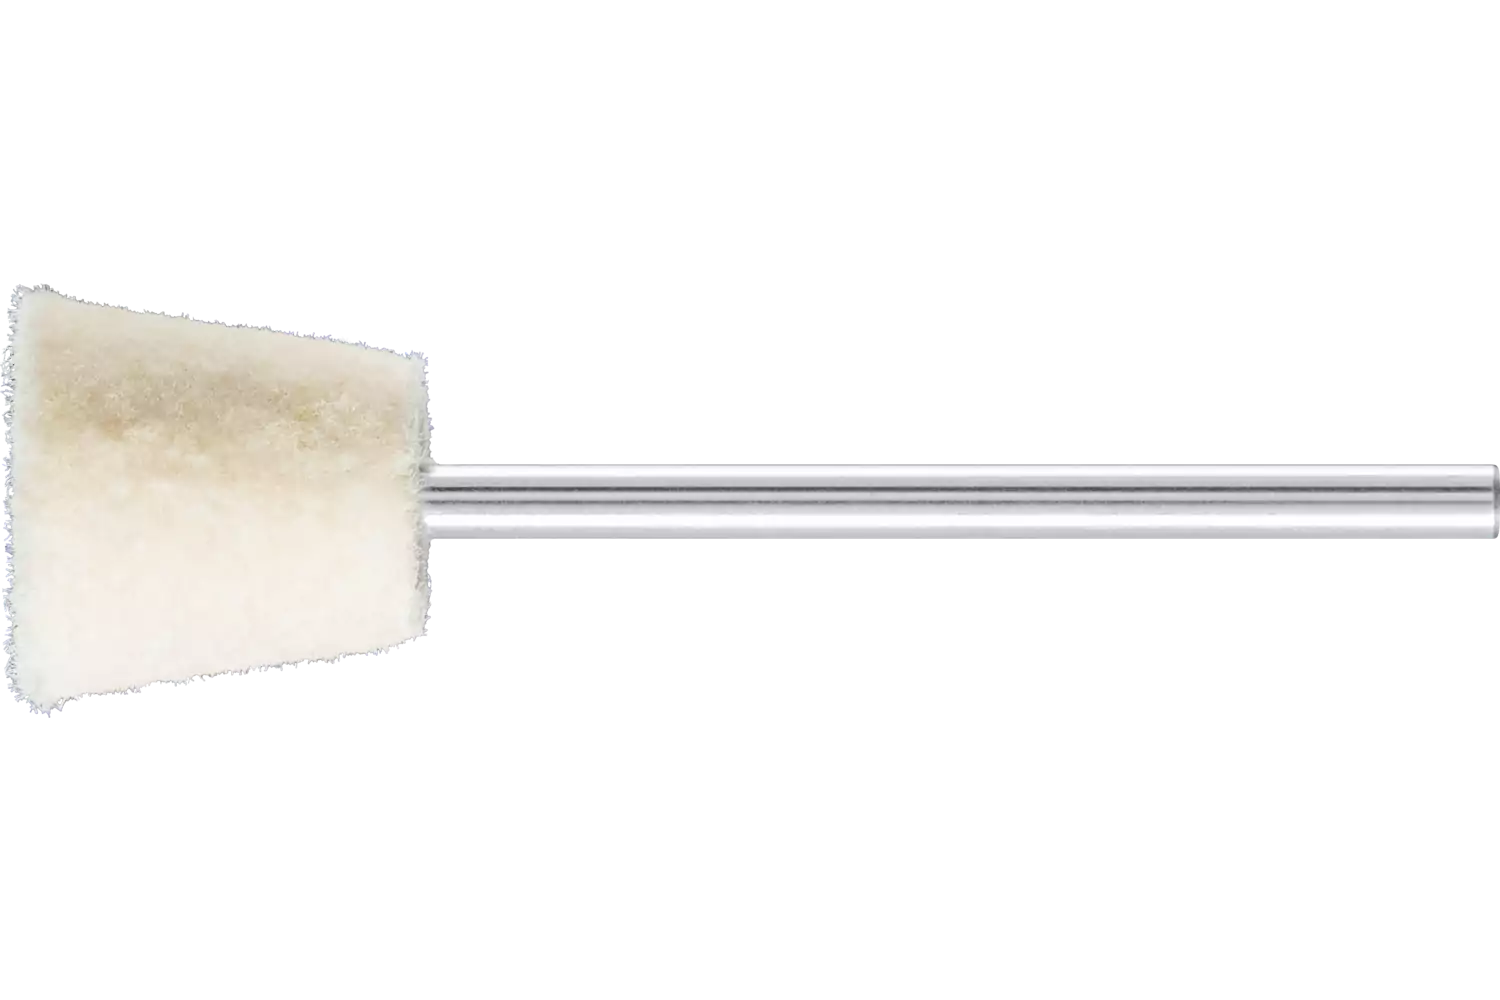 Feltri con gambo per lucidare duri forma a cono rovesciato Ø 12x12 mm, gambo Ø 2,35 mm 1